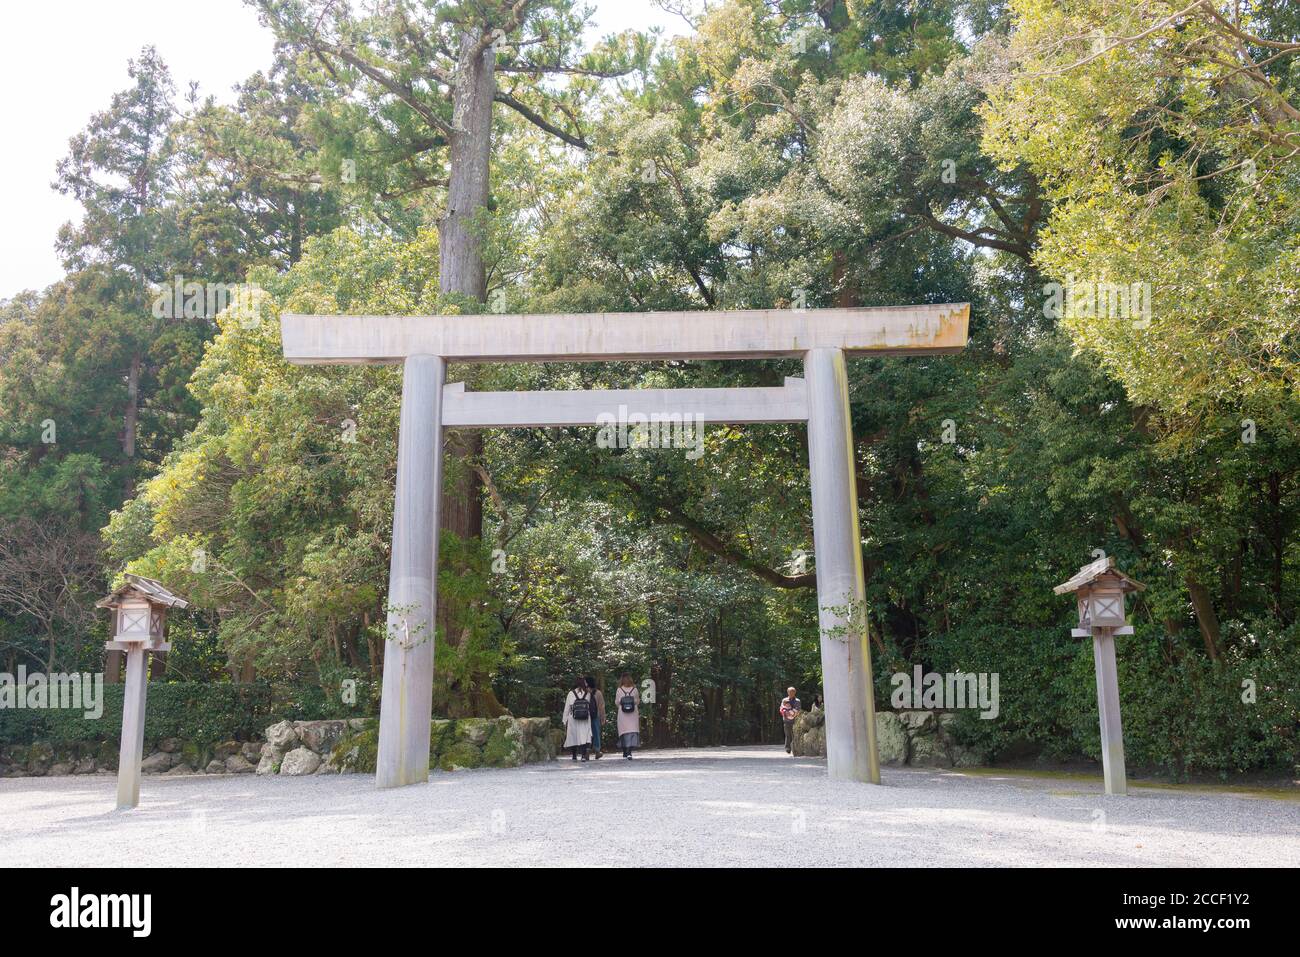 Mie, Japon - Grand Sanctuaire ISE (ISE Jingu Geku - sanctuaire extérieur) à ISE, Mie, Japon. Le sanctuaire a été une histoire de plus de 1500 ans. Banque D'Images